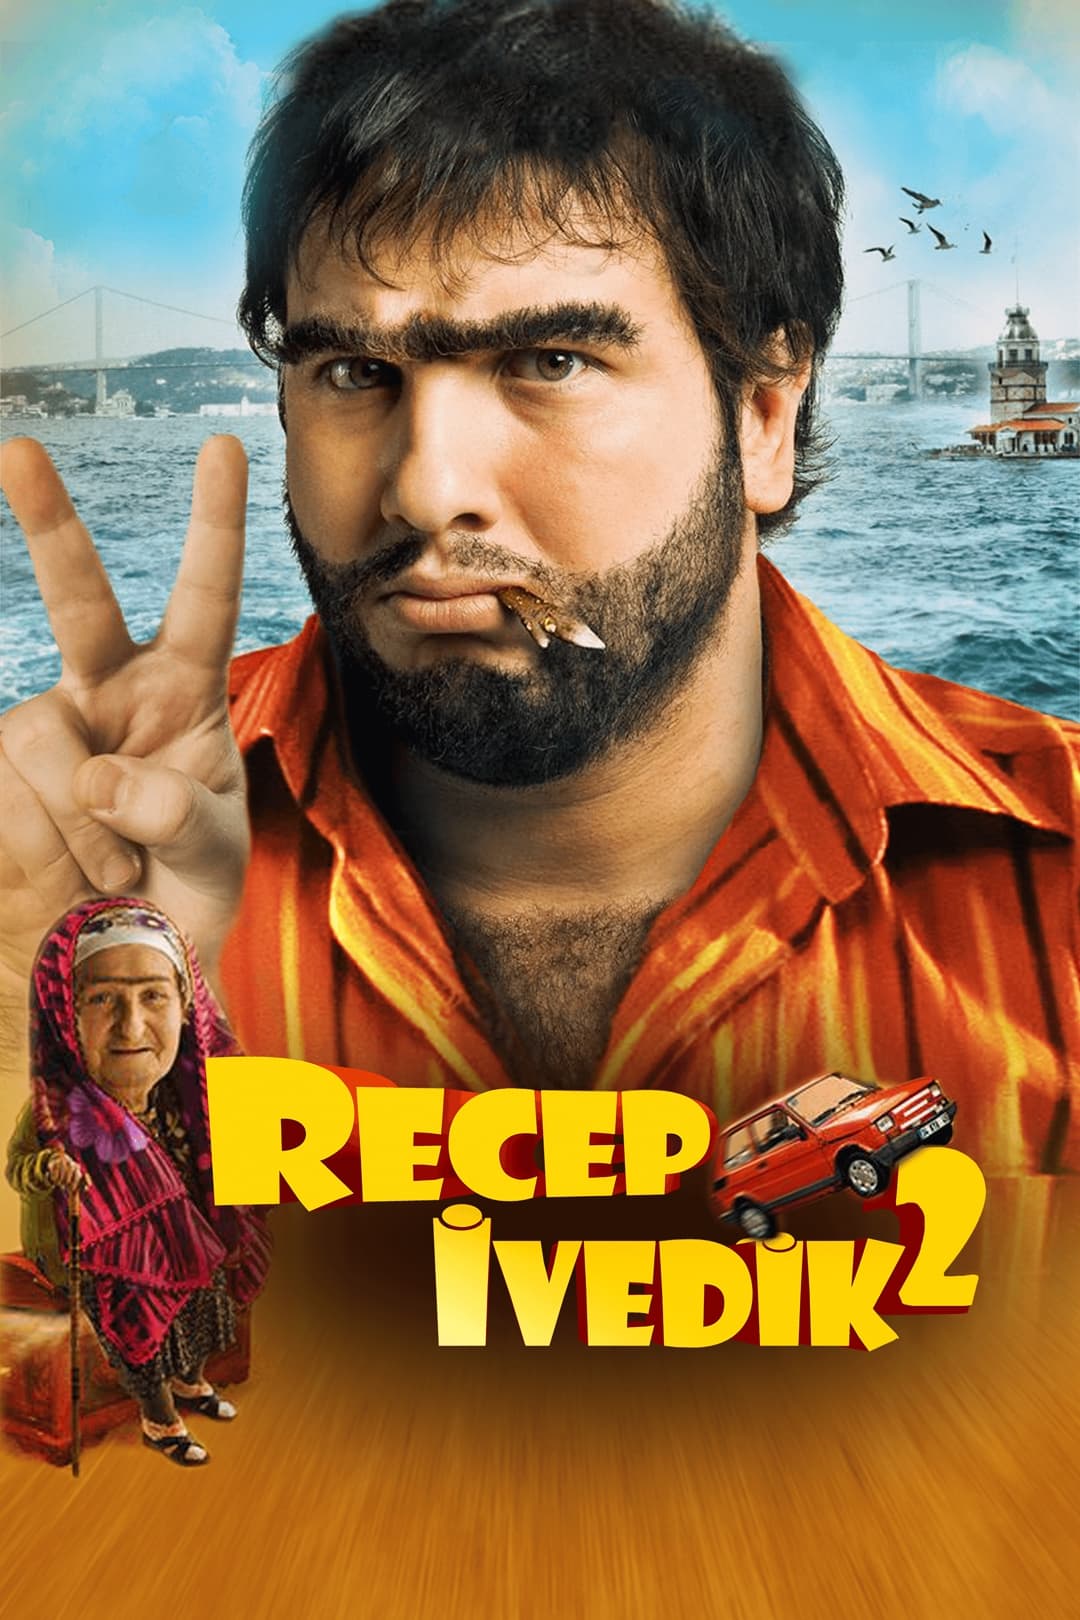 دانلود فیلم Recep Ivedik 2 2009 با دوبله فارسی